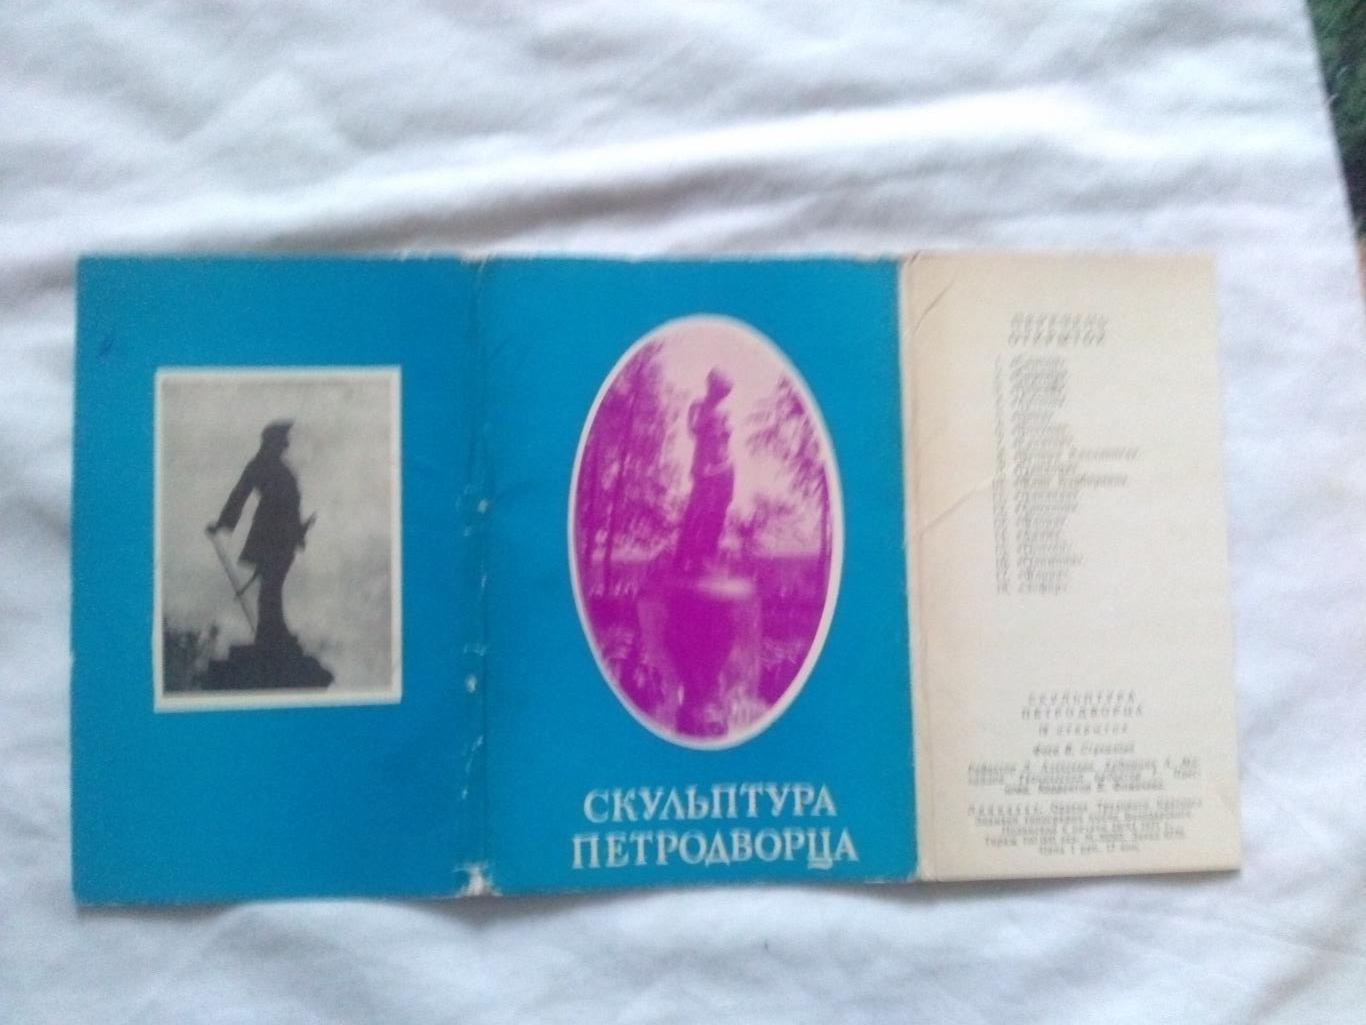 Скульптура Петродворца (Ленинград) 1971 г. полный набор - 18 открыток (идеал) 1